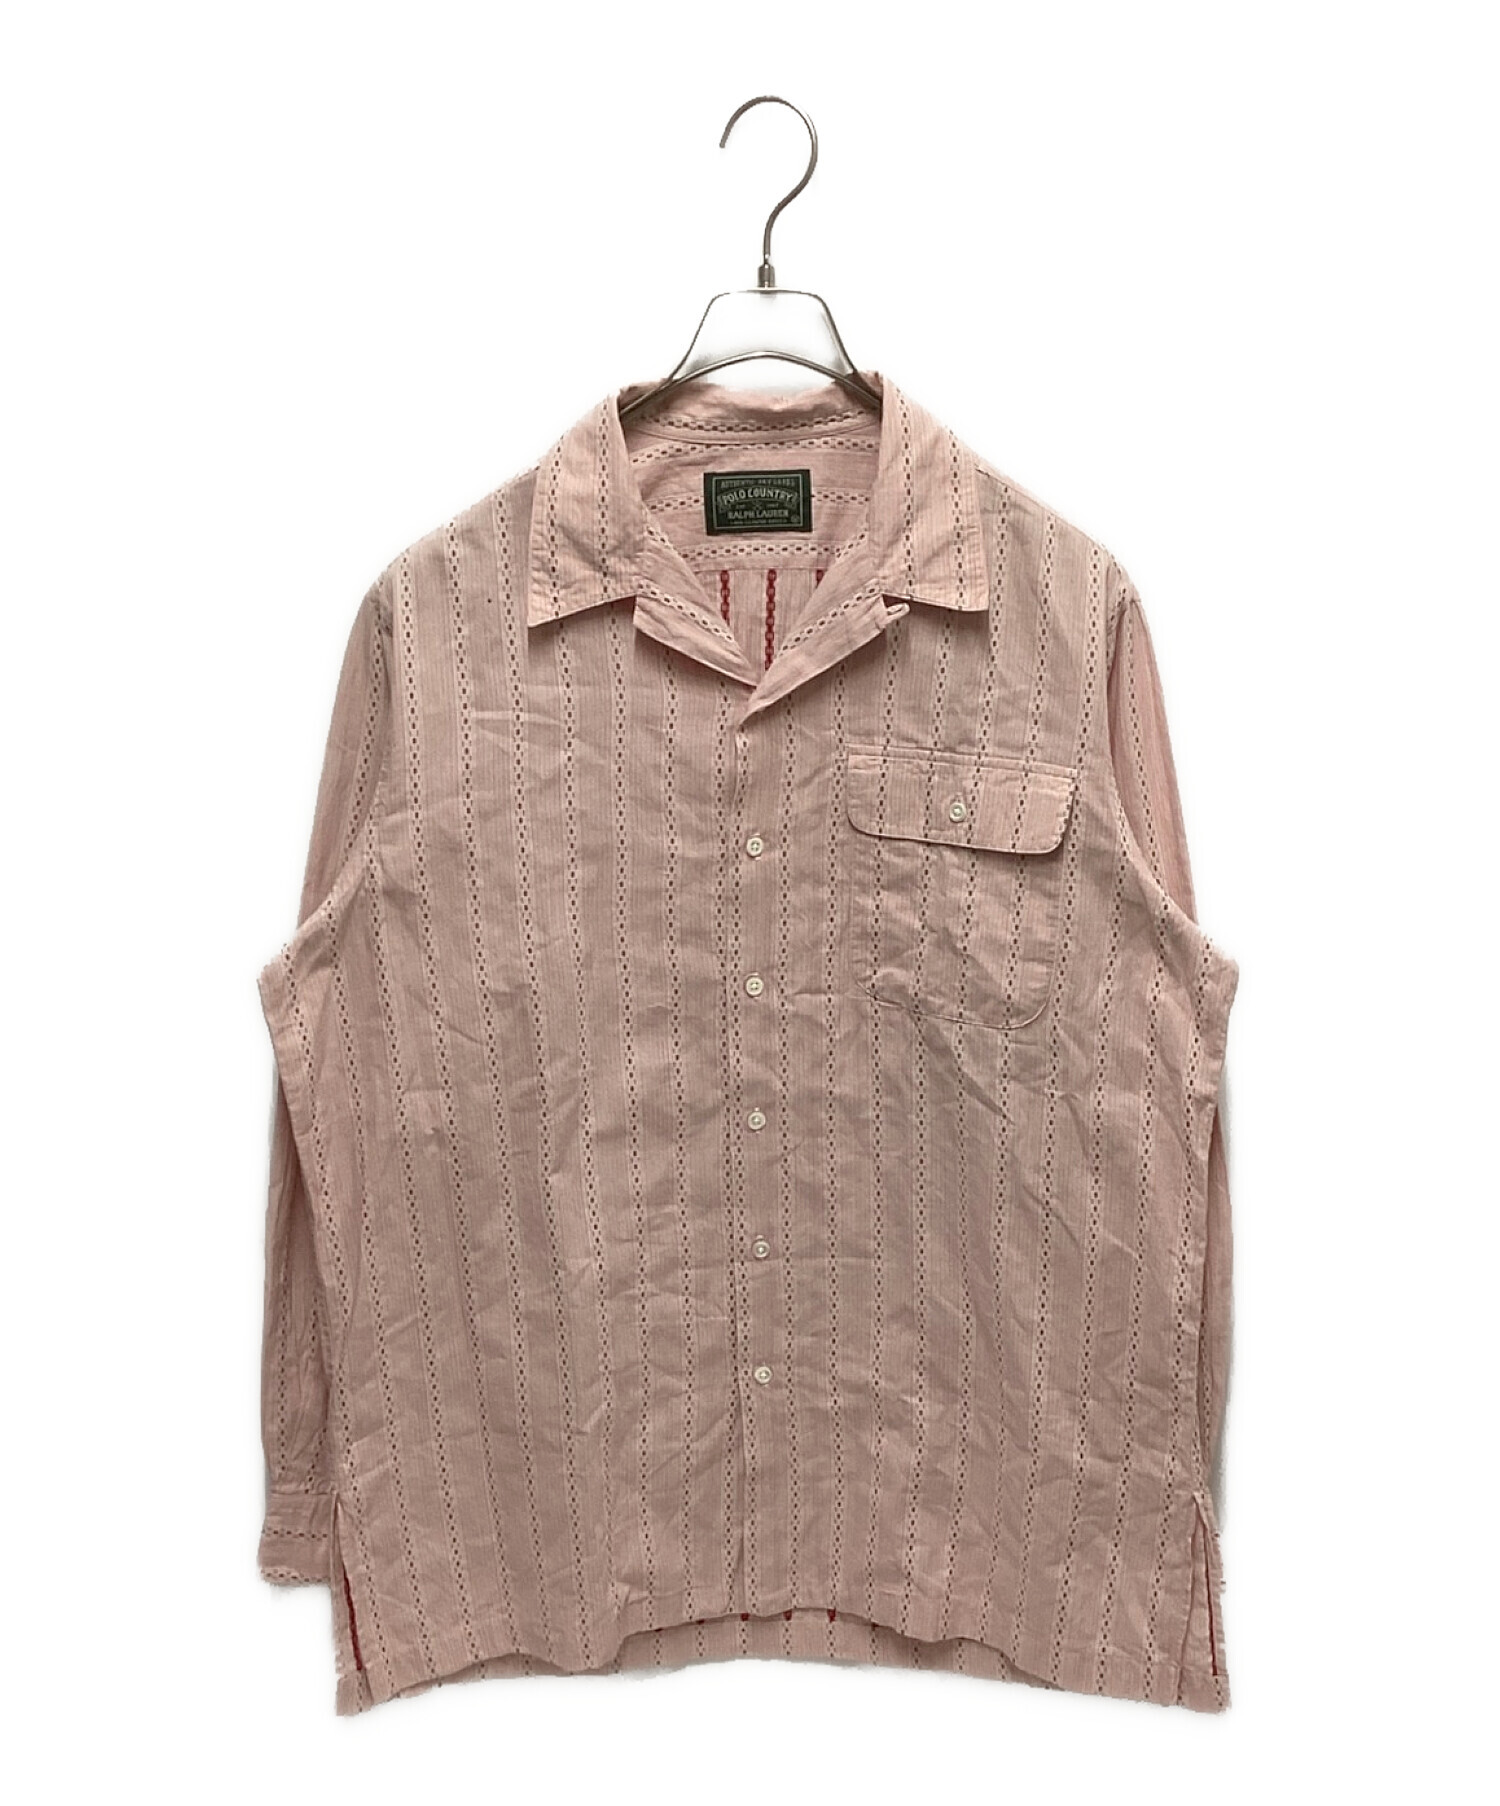 POLO COUNTRY (ポロカントリー) 小紋ストライプオープンカラーシャツ ピンク サイズ:M